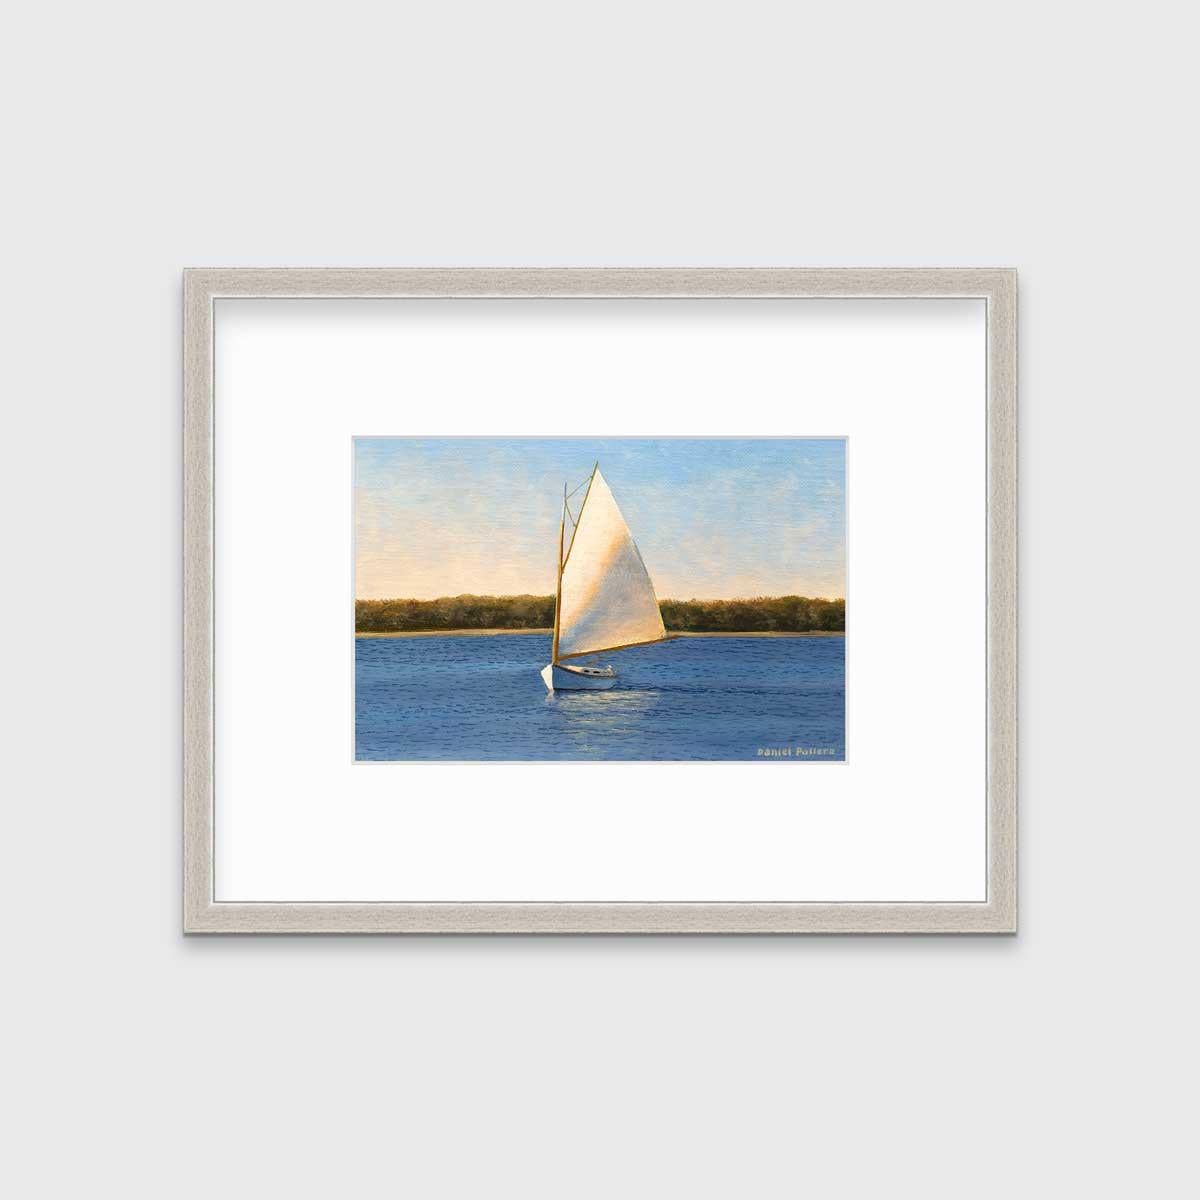 Daniel Pollera Landscape Print – ""Weißer Segelboot", gerahmter Druck in limitierter Auflage, 12 Zoll x 18 Zoll"